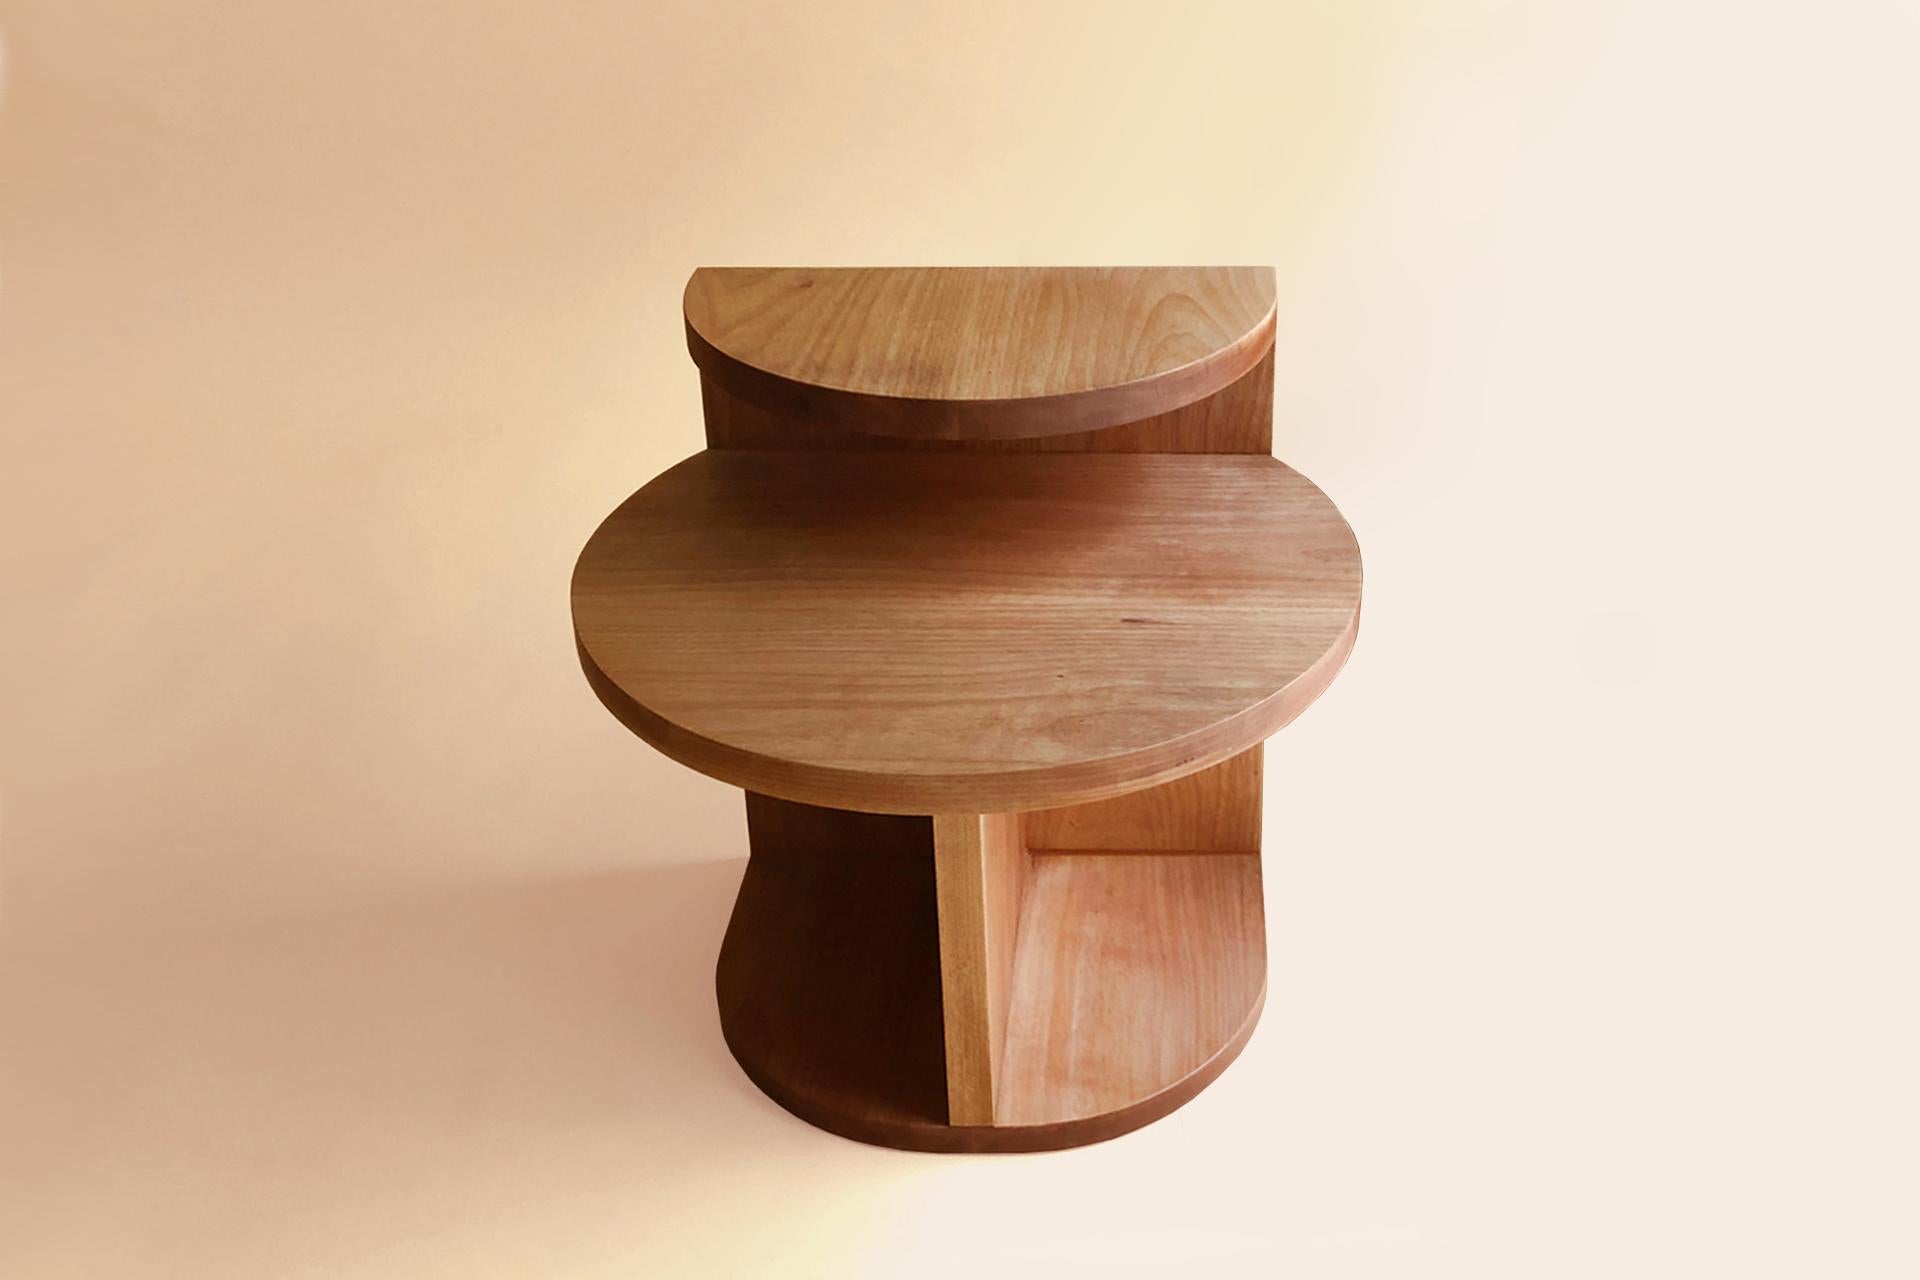 La table d'appoint café présente des formes géométriques simples. Son design contemporain, avec ses deux plateaux de forme circulaire et ses deux niveaux de hauteur, en fait une pièce polyvalente qui peut être utilisée comme table basse ou table